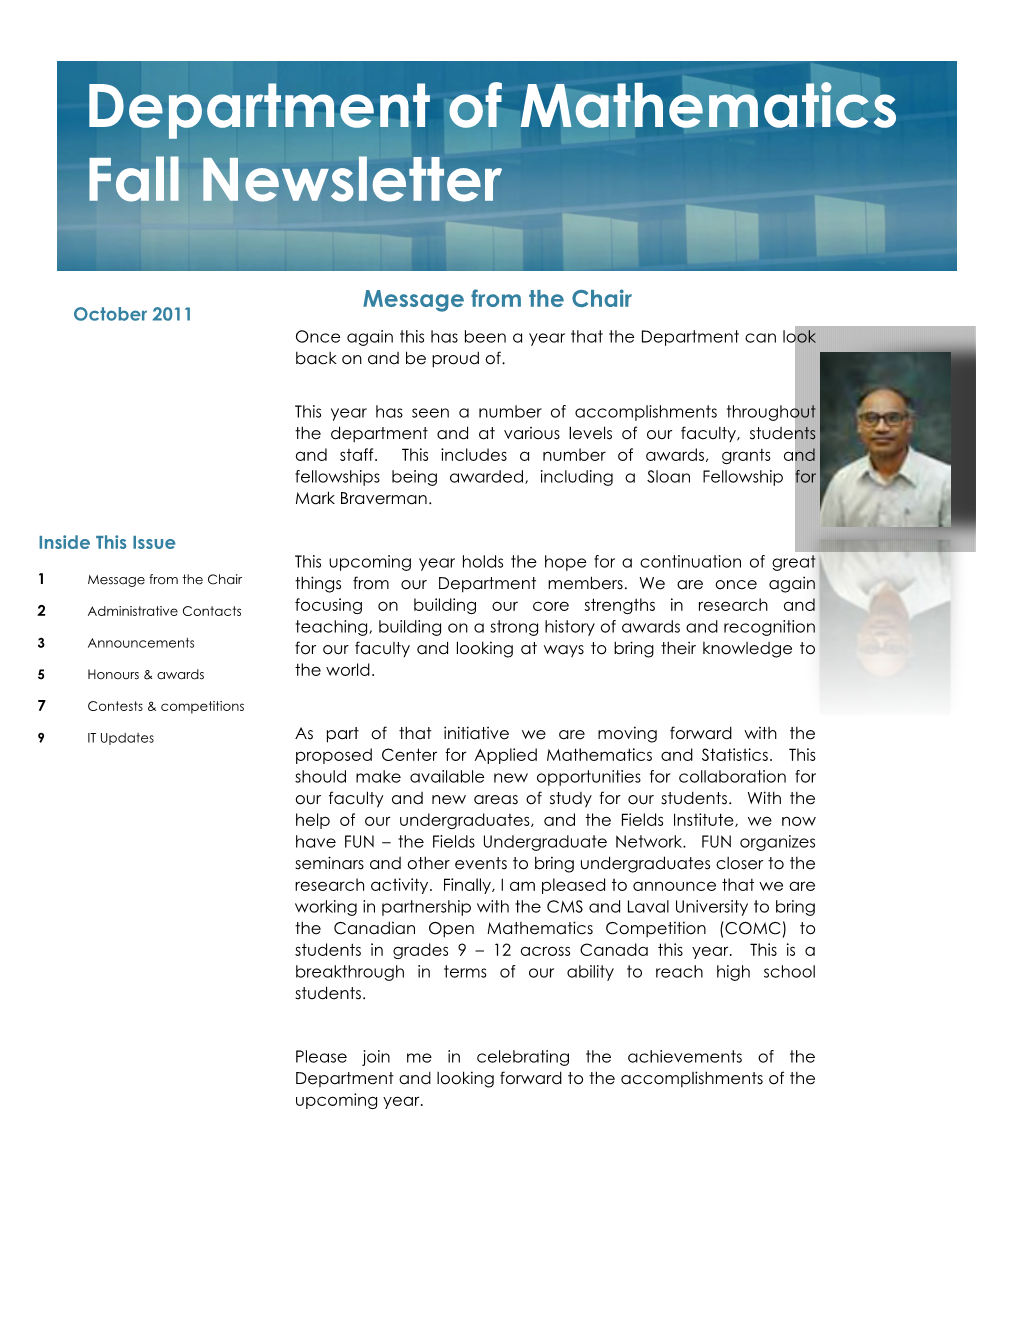 Department of Mathematics Fall Newsletter